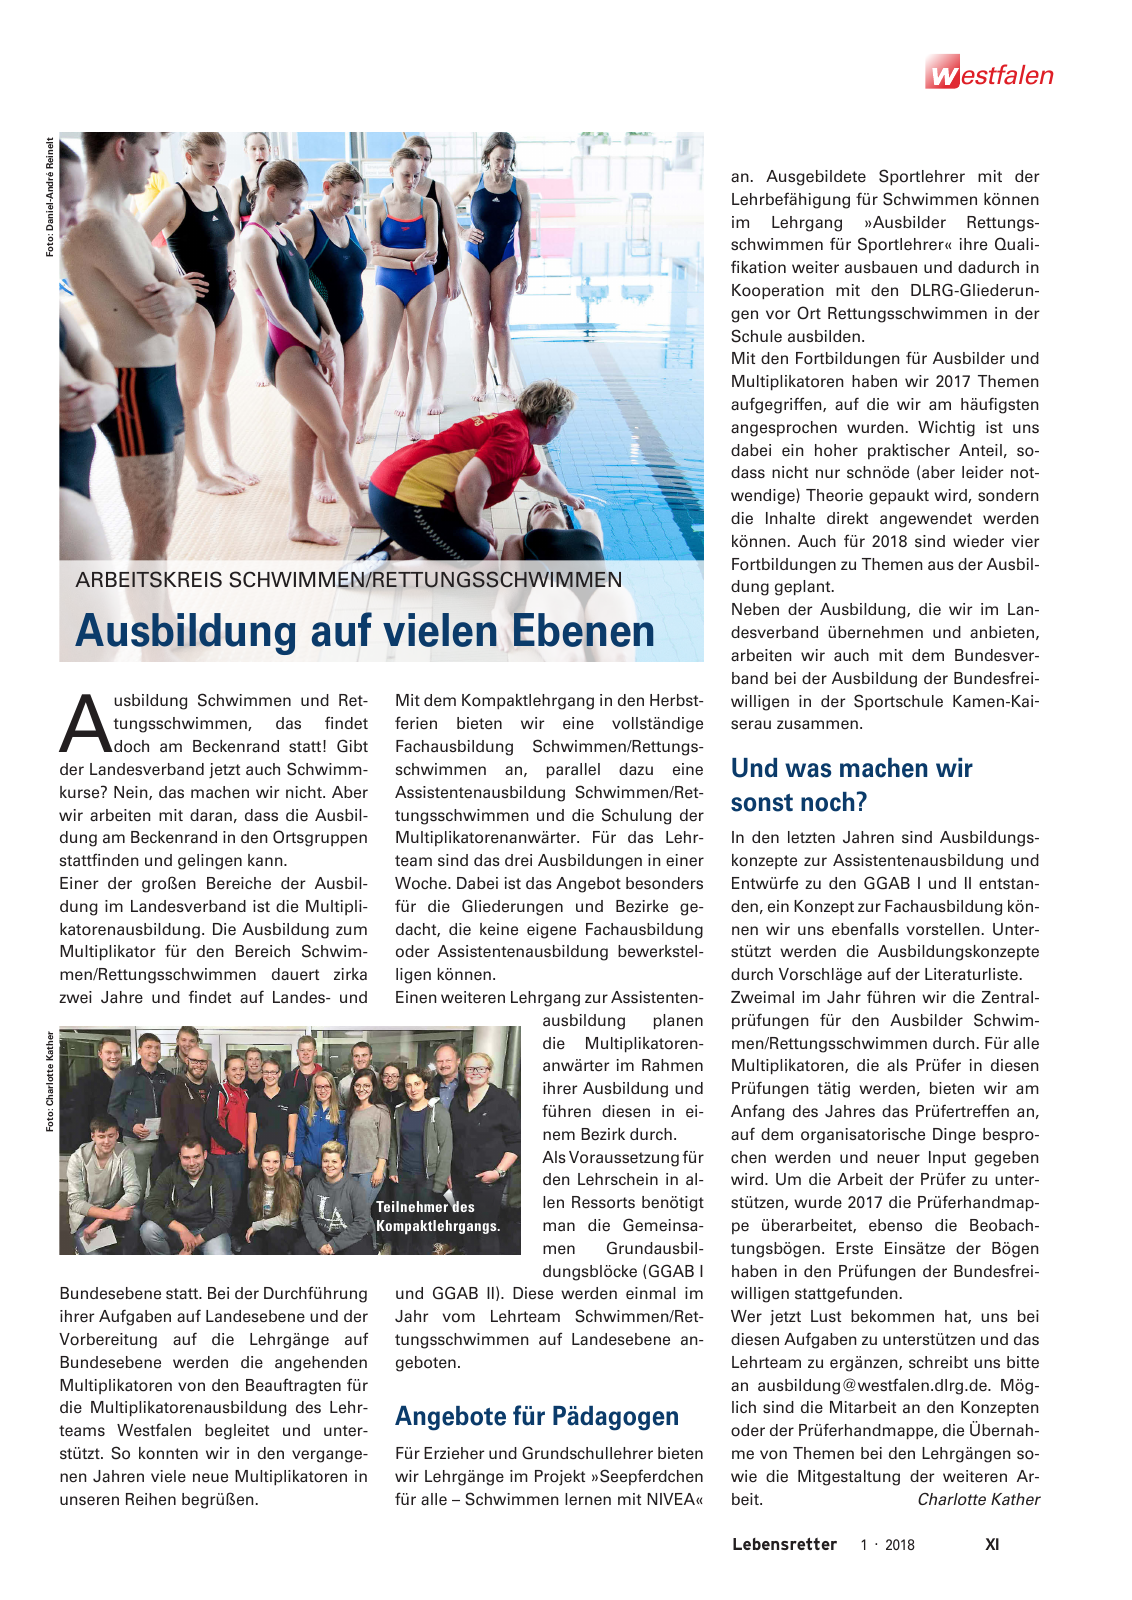 Vorschau Lebensretter 1/2018 - Regionalausgabe Westfalen Seite 13